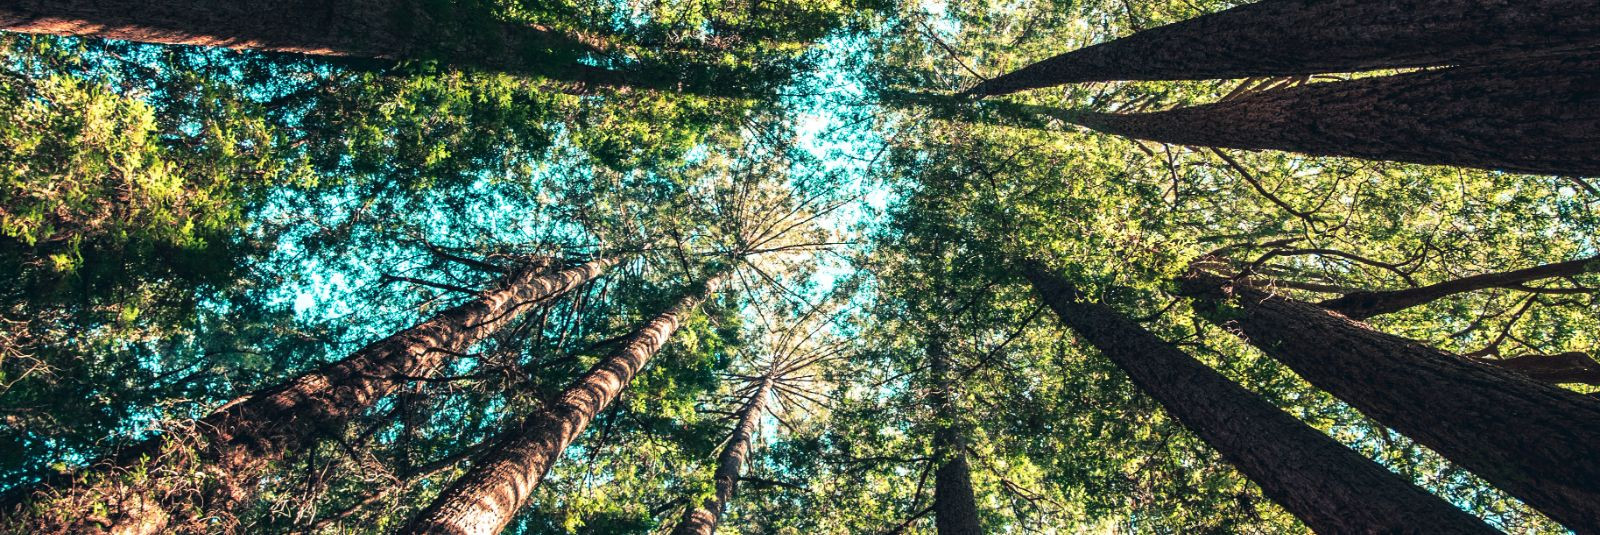 Eestimaa loodus on midagi erakordset - kaunid metsad, rohelised aasad ja rikkalik taimestik, mis pakuvad meile puhast õhku ja elukeskkonda. Ü&K FERA on noor